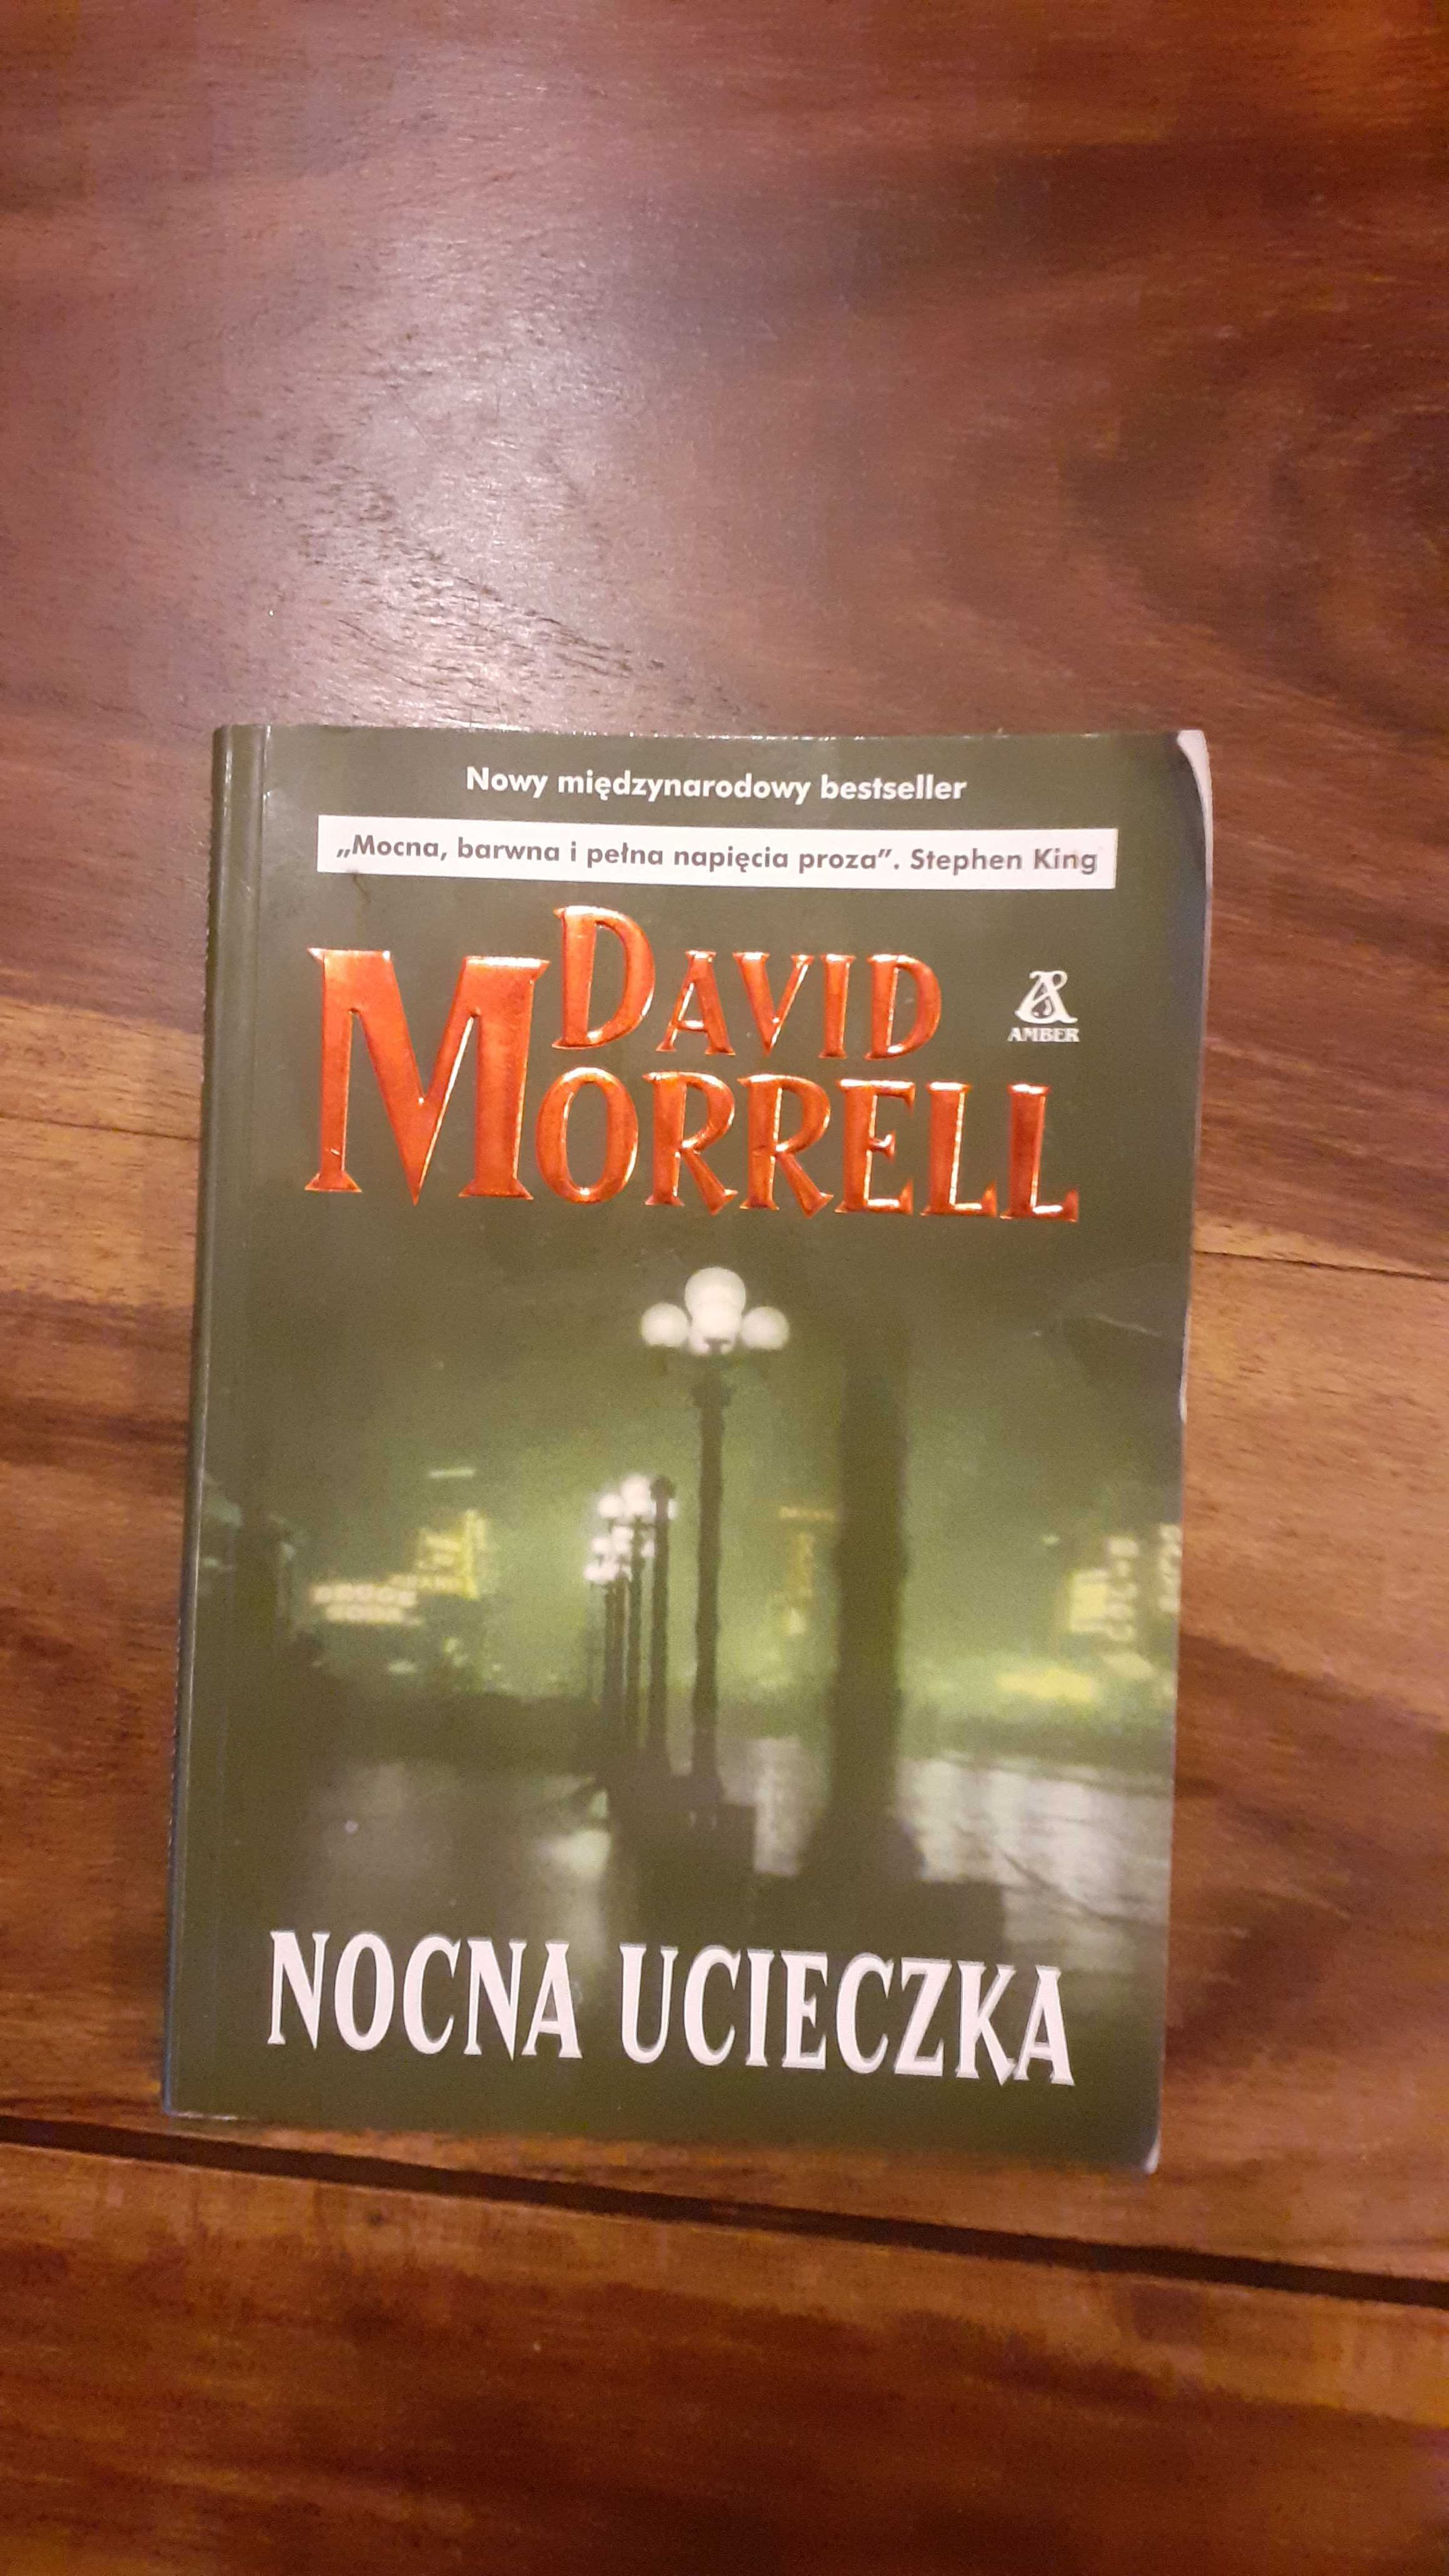 David Morrell,  Nocna ucieczka